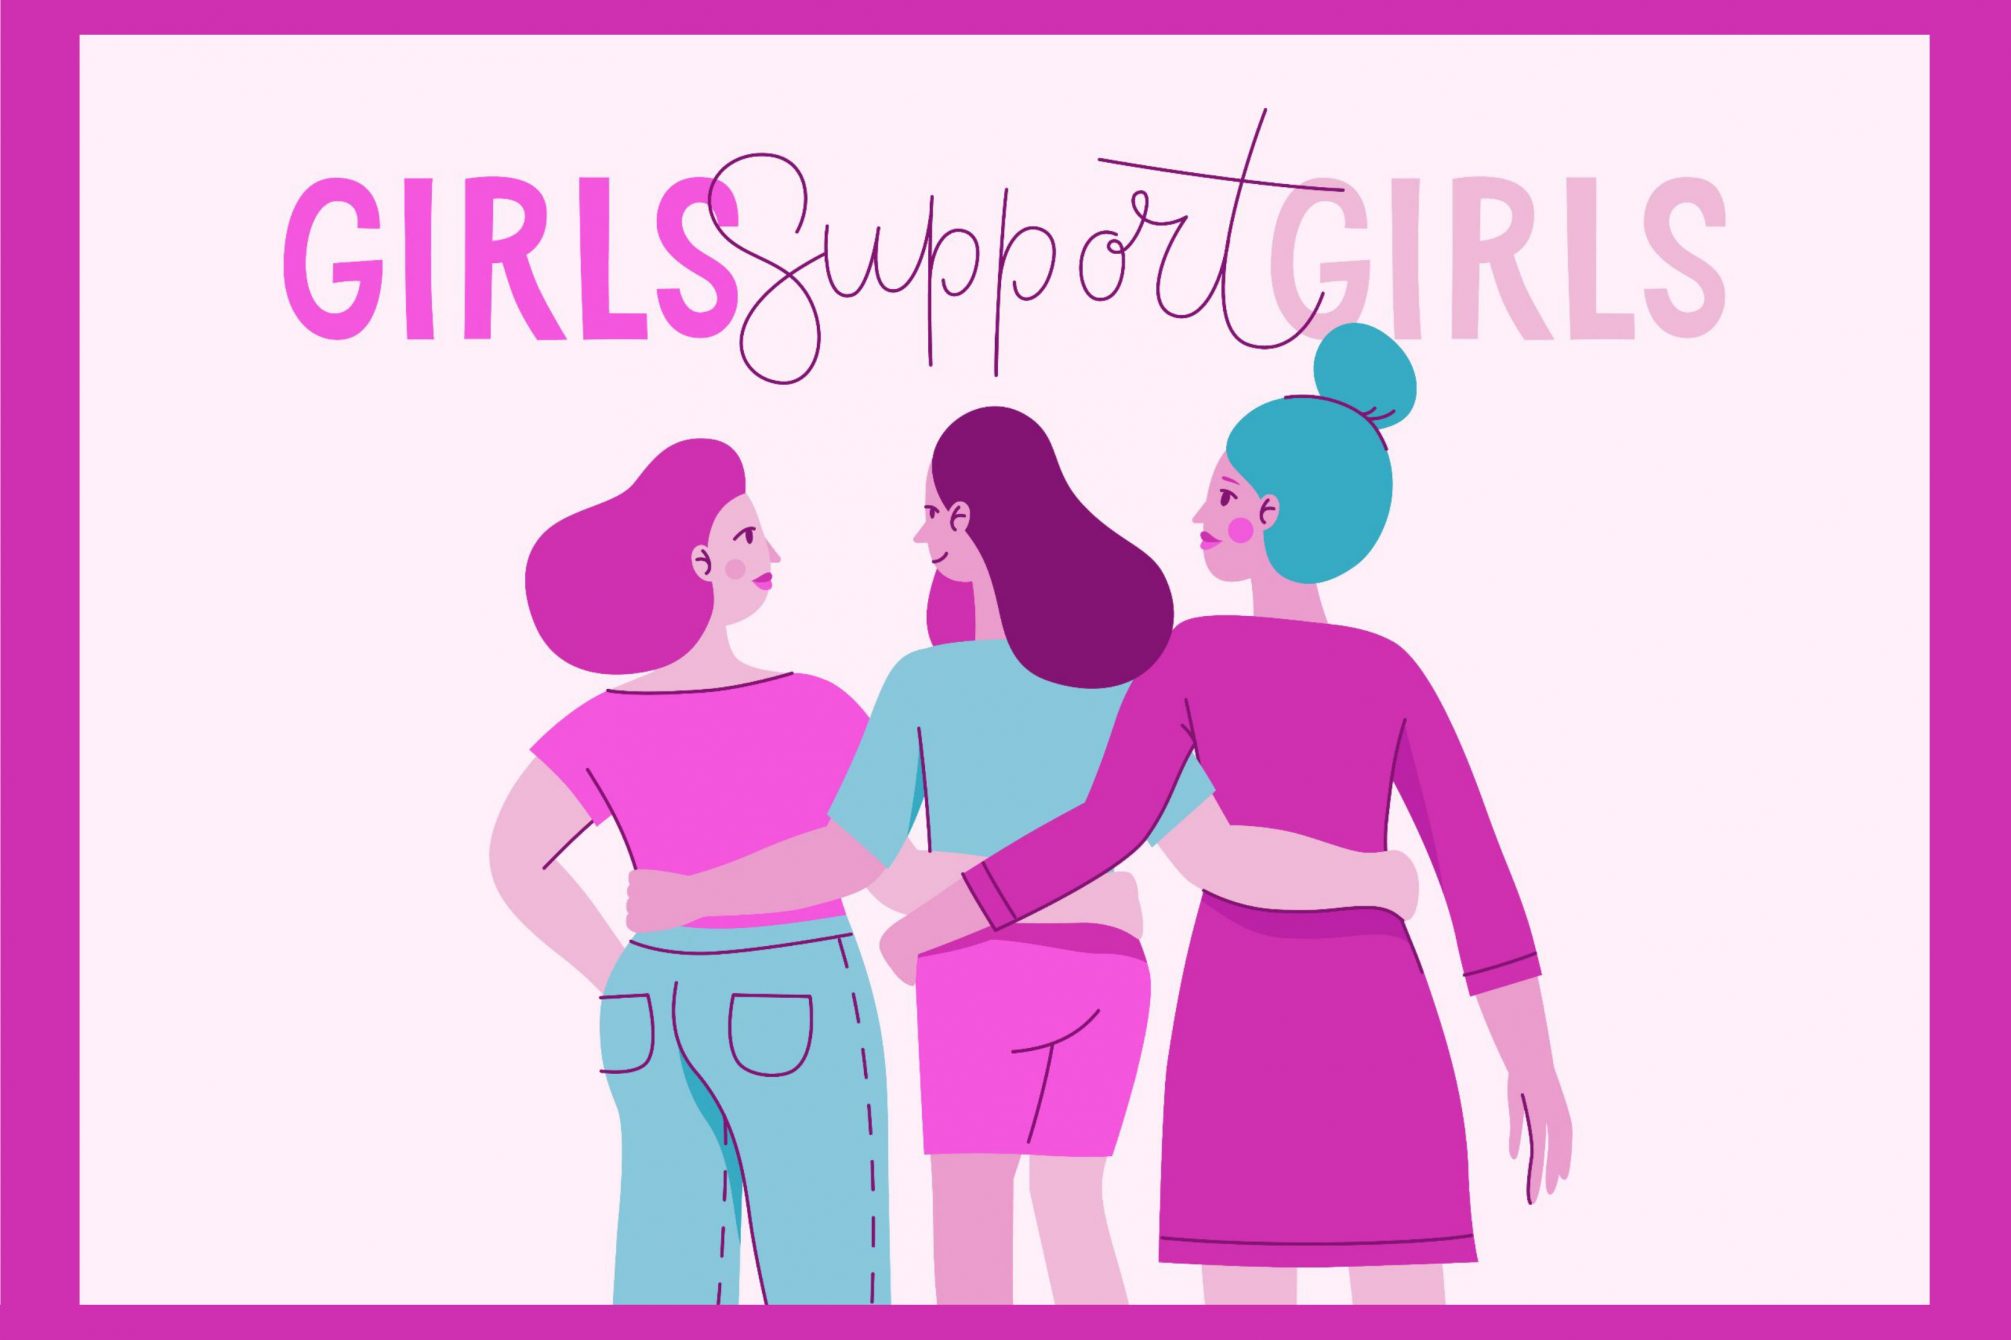 Zeichnung mit drei Mädchen, die Arm in Arm gehen. Darüber der Text "Girls support Girls".